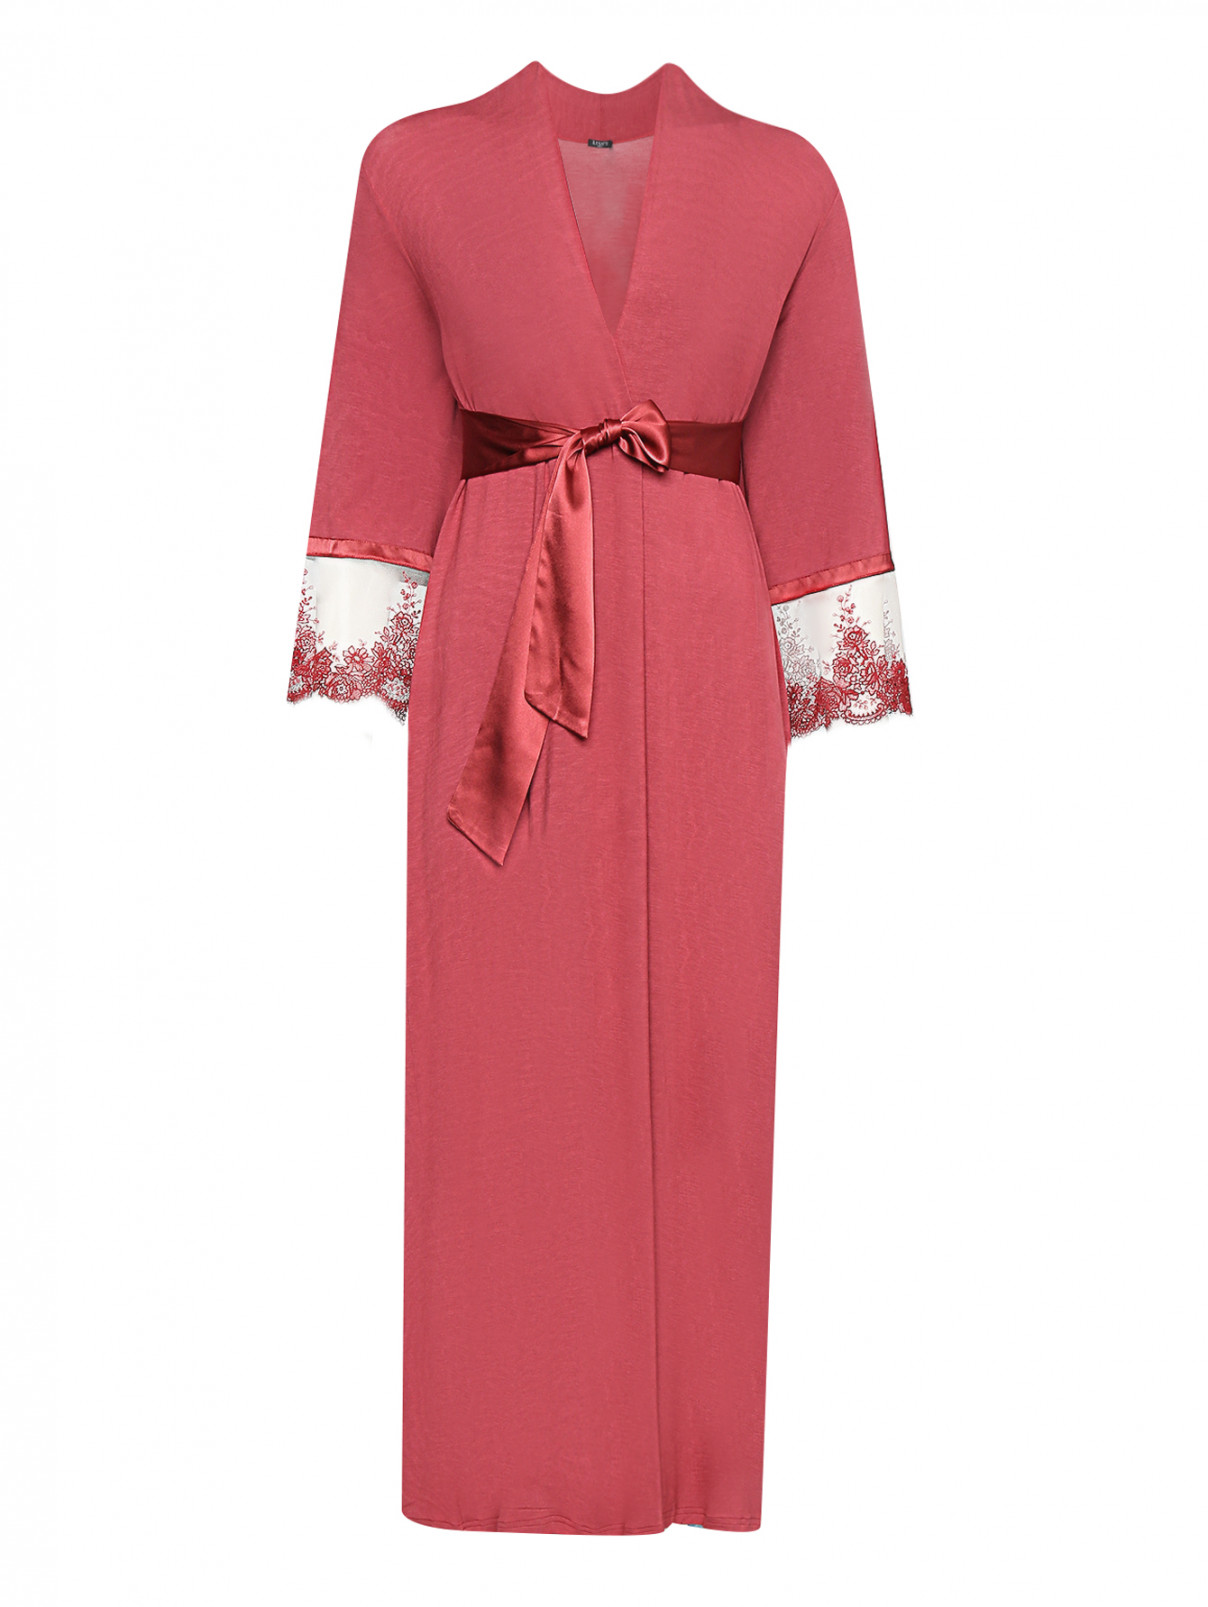 Халат с кружевной вышивкой на рукавах Ritratti  –  Общий вид  – Цвет:  Красный